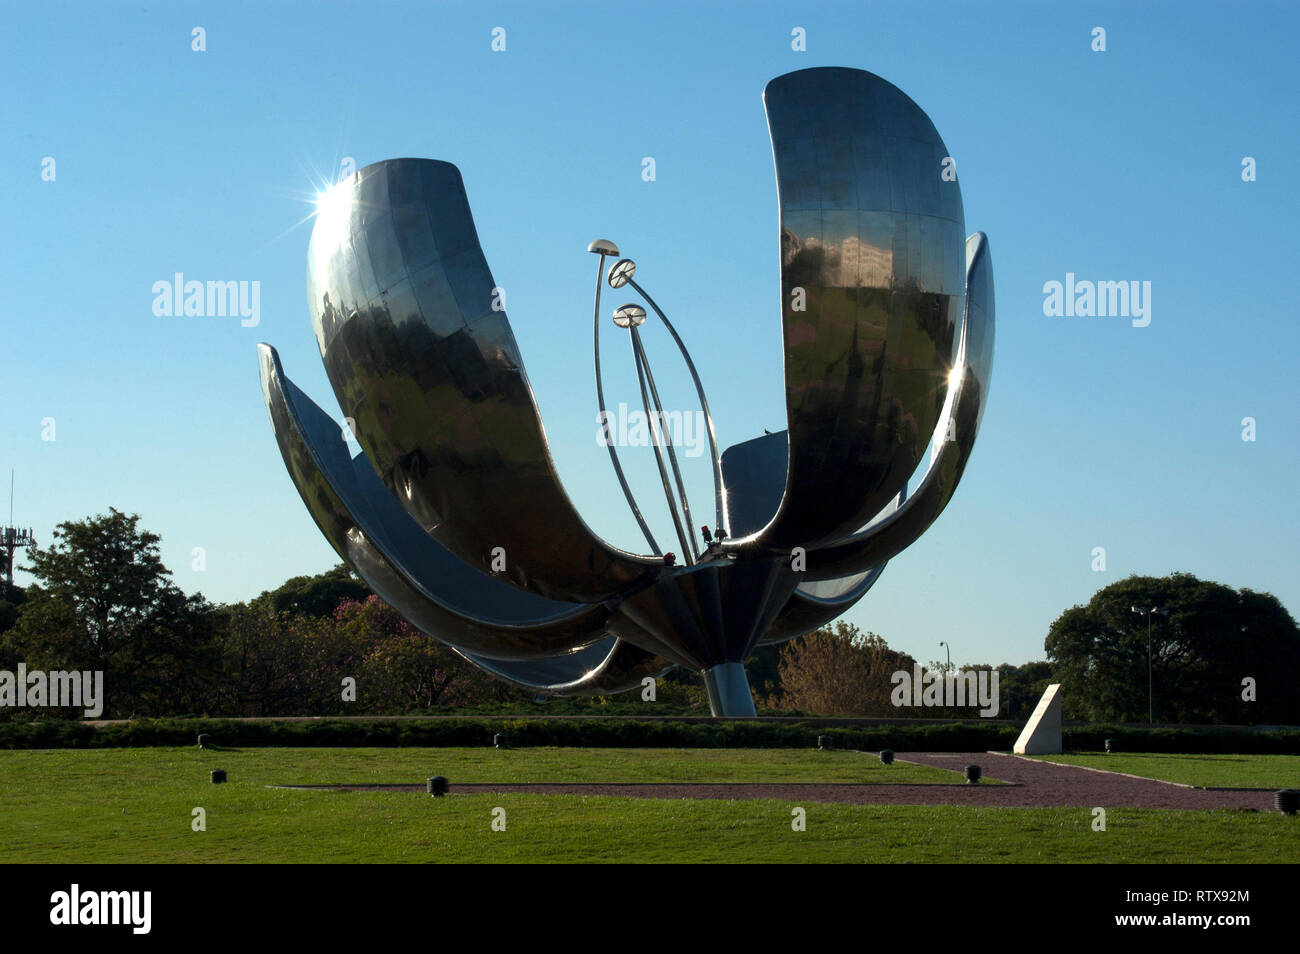 "Floralis generica", a steel flower sculpture by Eduardo Catalano located in Plaza de Las Naciones Unidas, Buenos Aires, Argentina Stock Photo